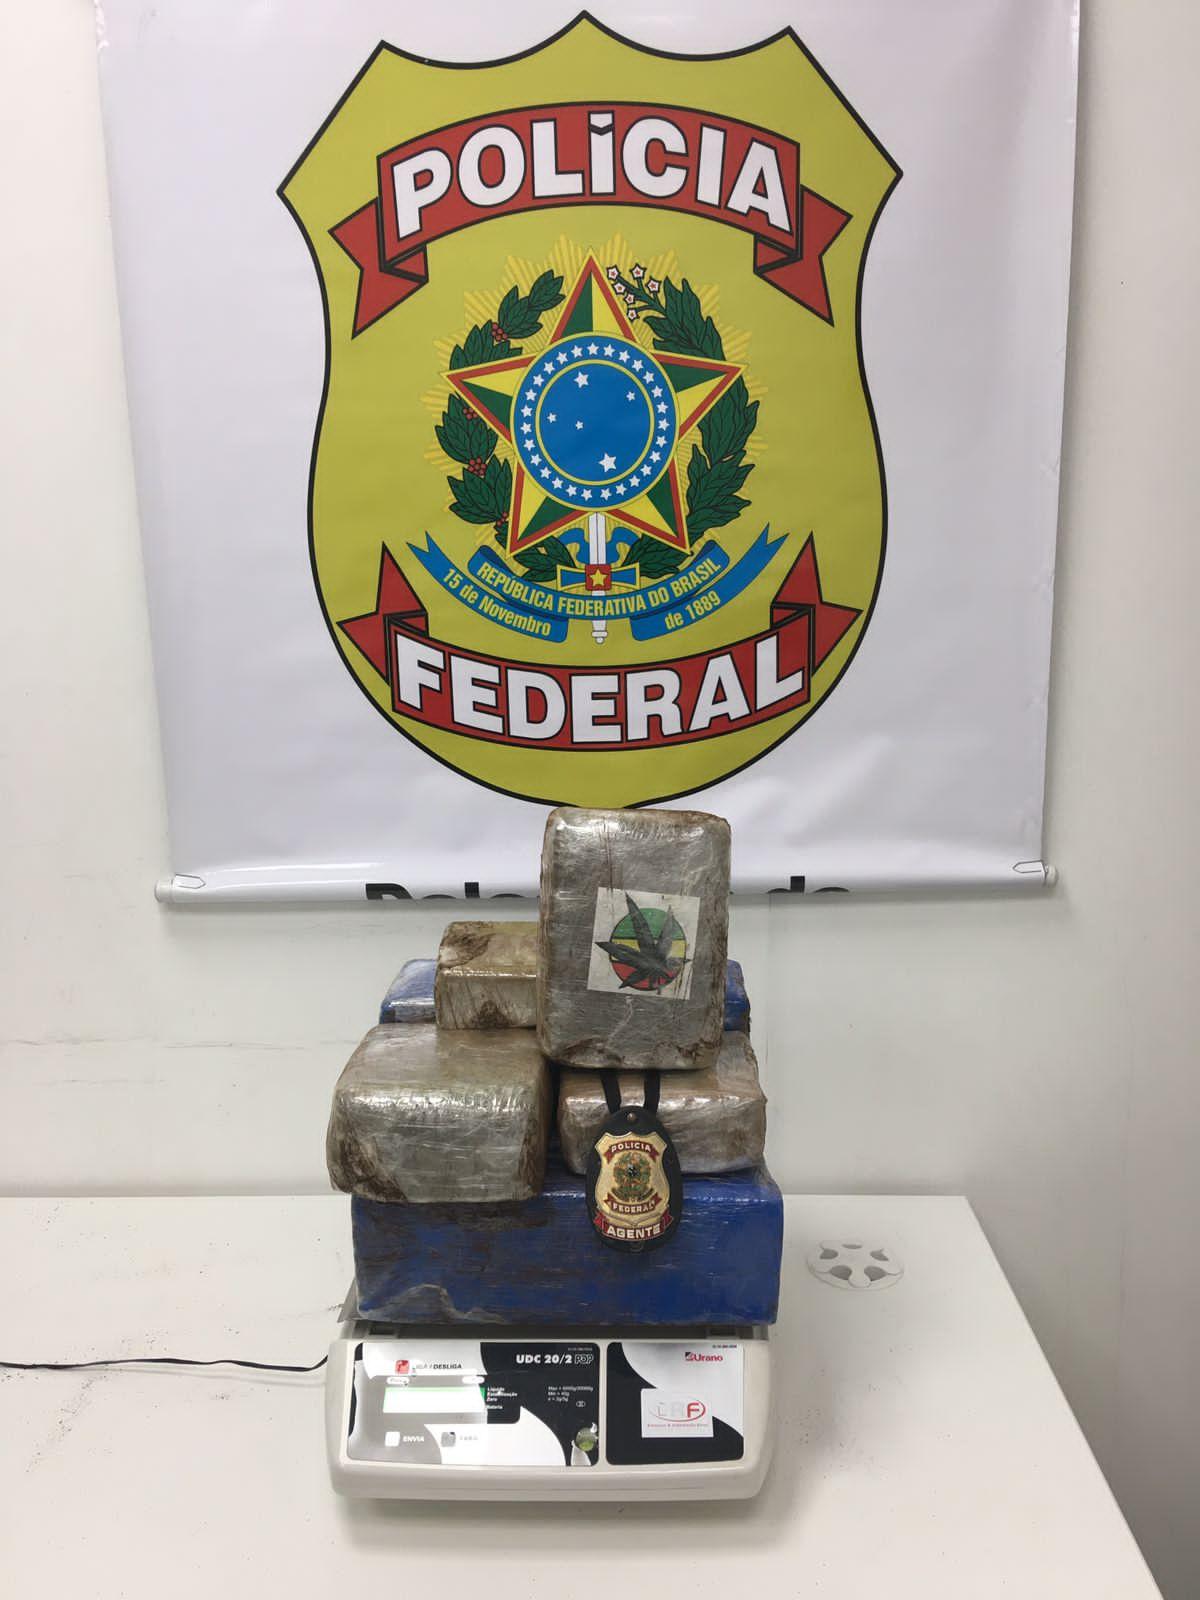 Policiais federais apreendem 13 Kg de supermaconha em bagagem de passageira (Polícia Federal / Divulgação)